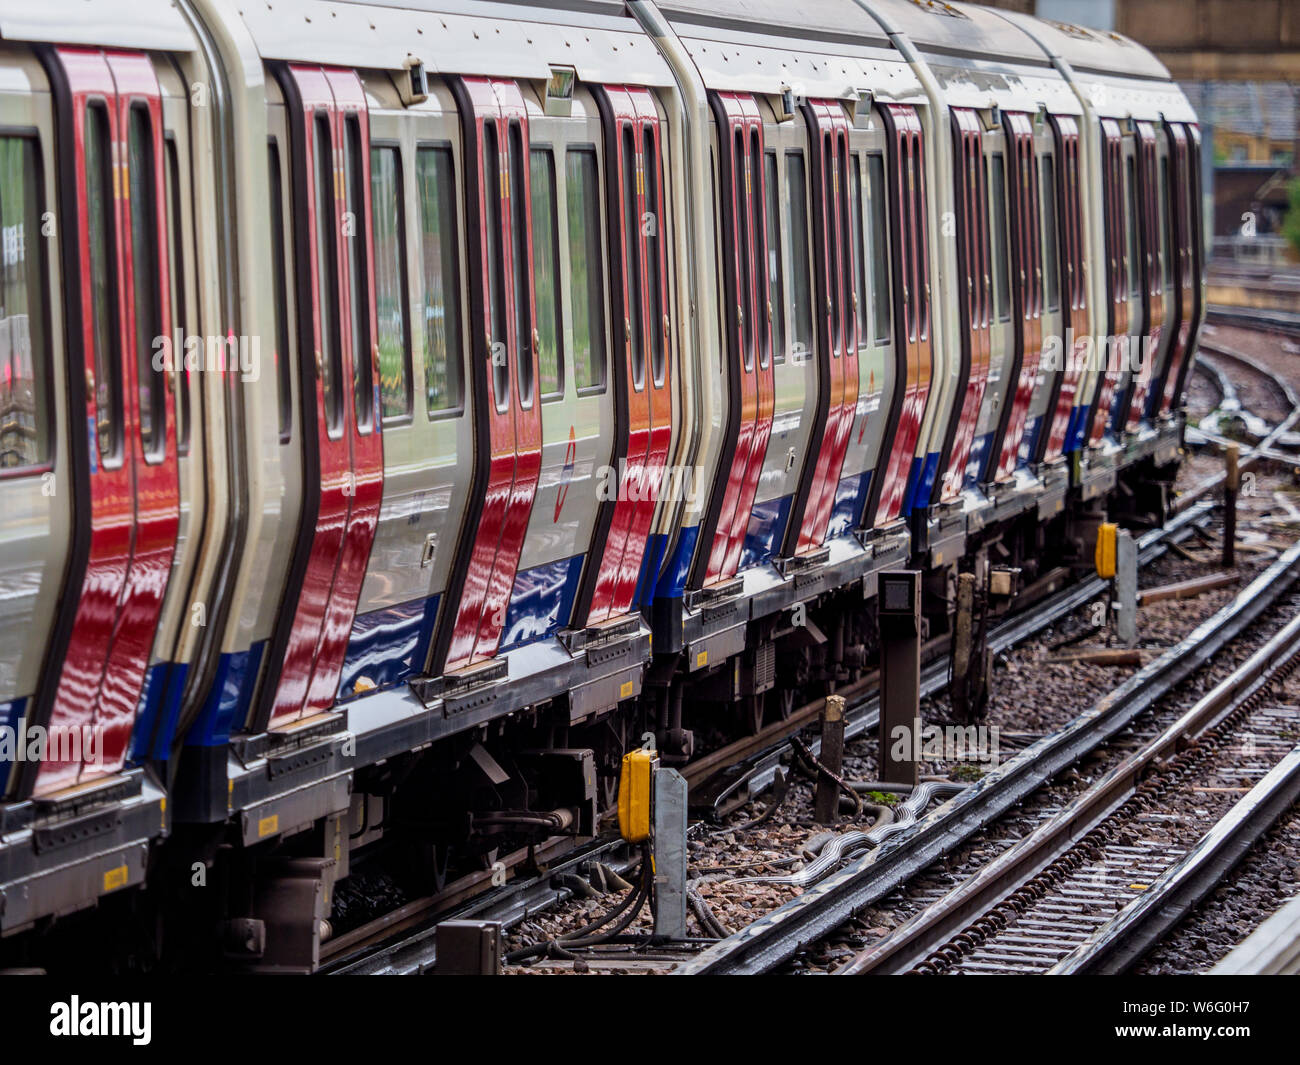 Treno tubo London - London Underground treno della District Line in esecuzione su una sezione di superficie a est del prosciutto dalla stazione di East London Foto Stock